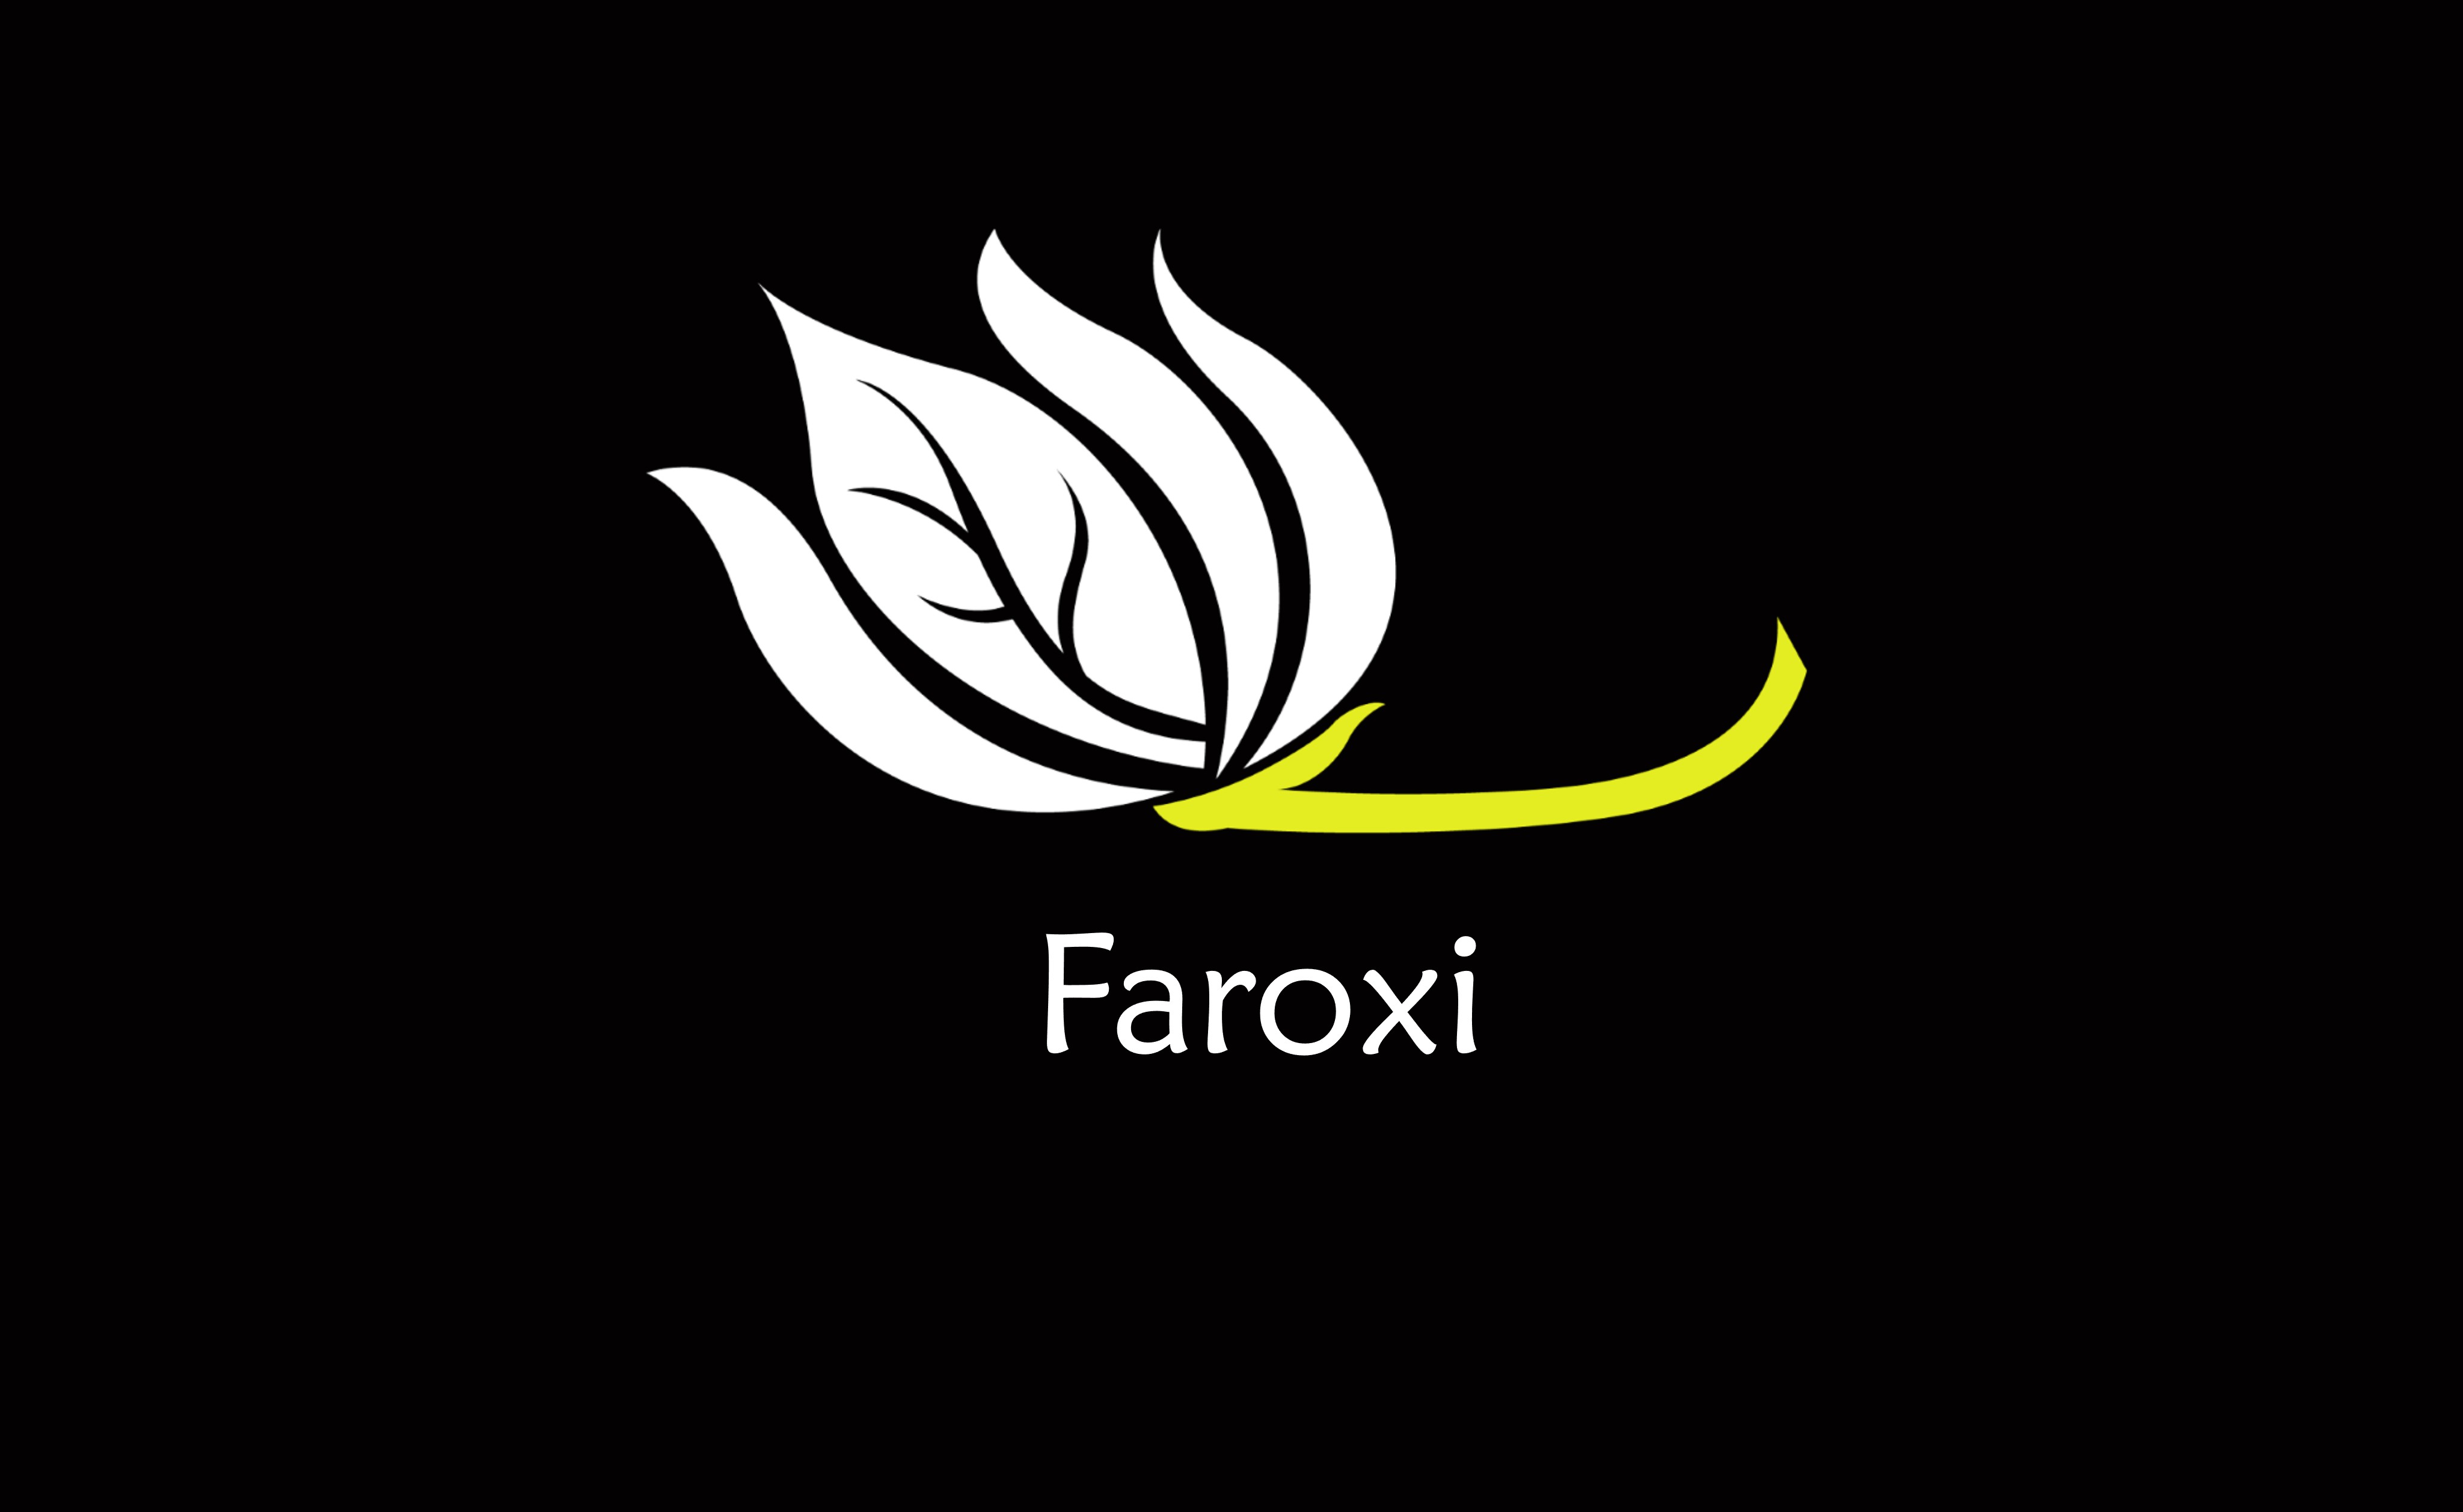 Faroxi